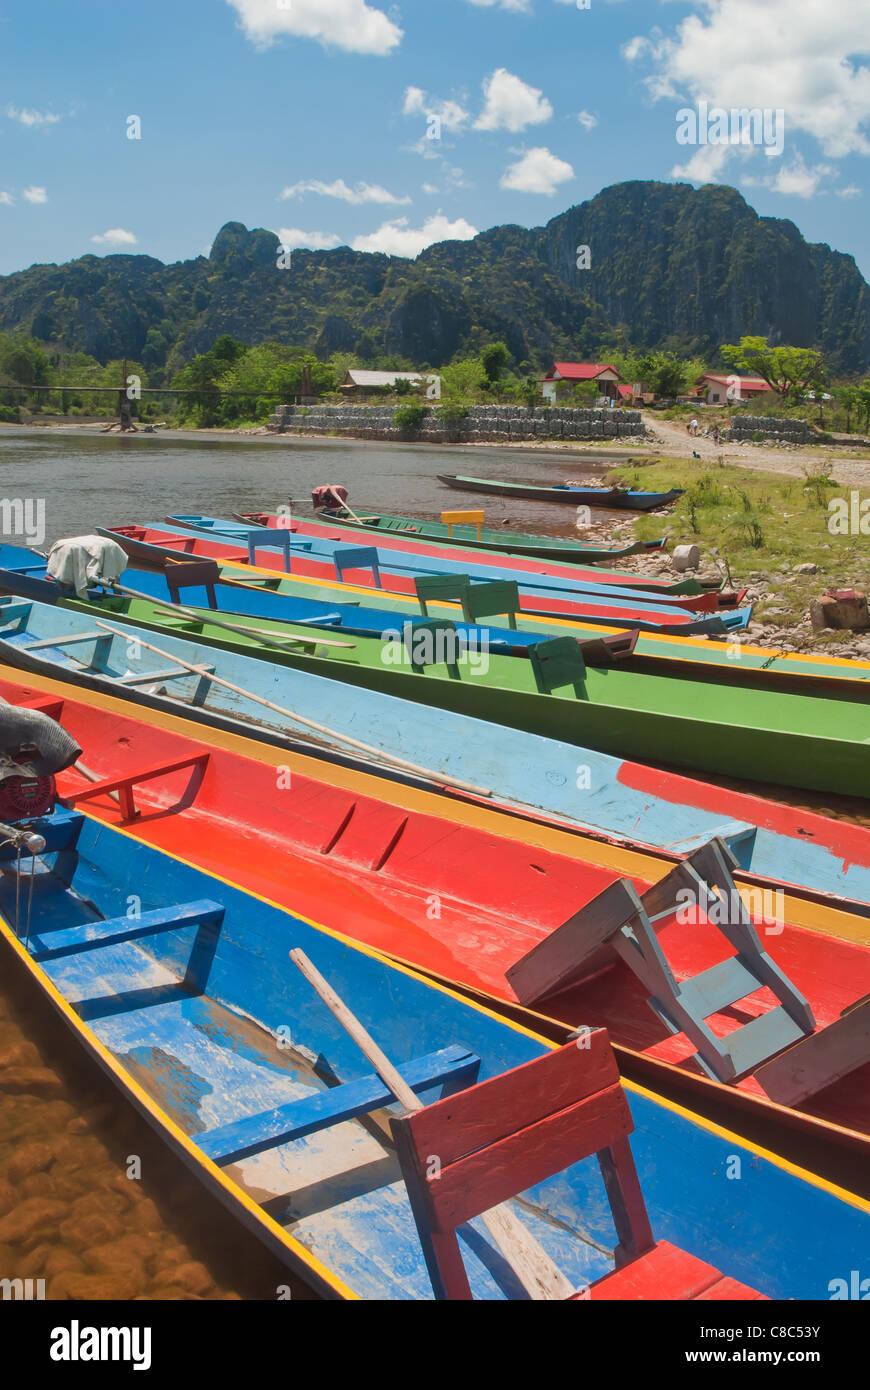 Long Tail Boats on the river bank, Vang Vieng, Laos Stock Photo